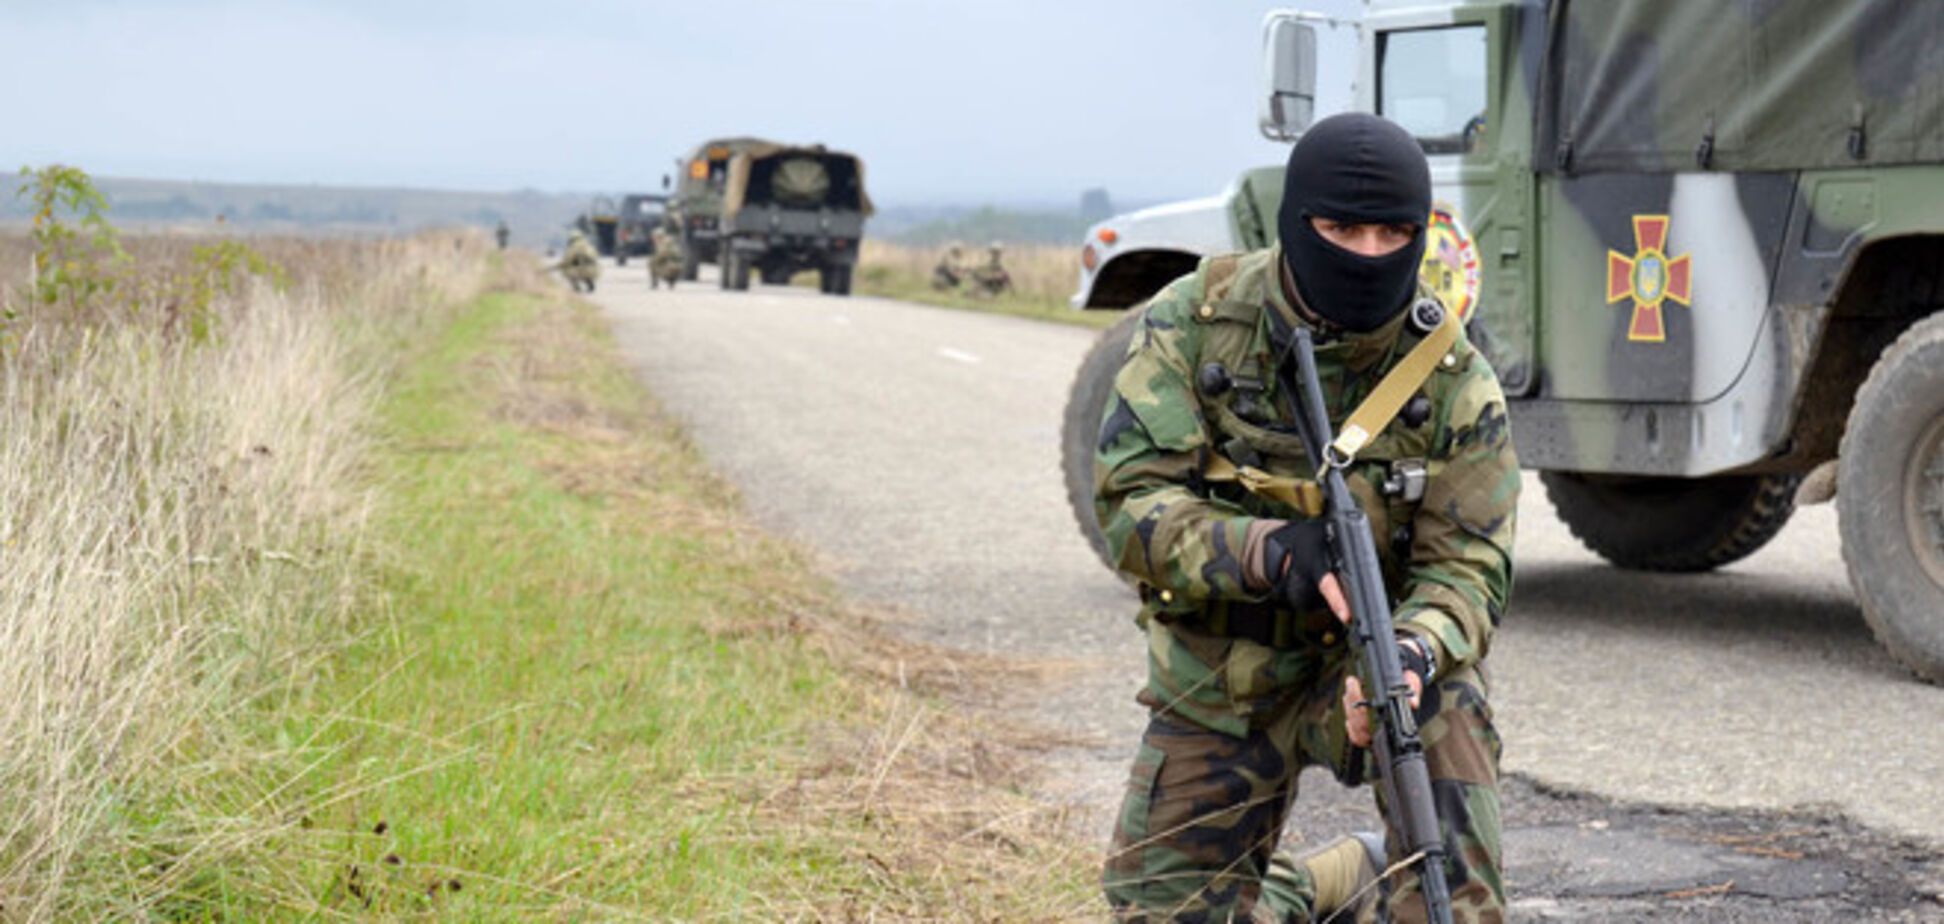 Войска НАТО во Львове поставили свои блокпосты